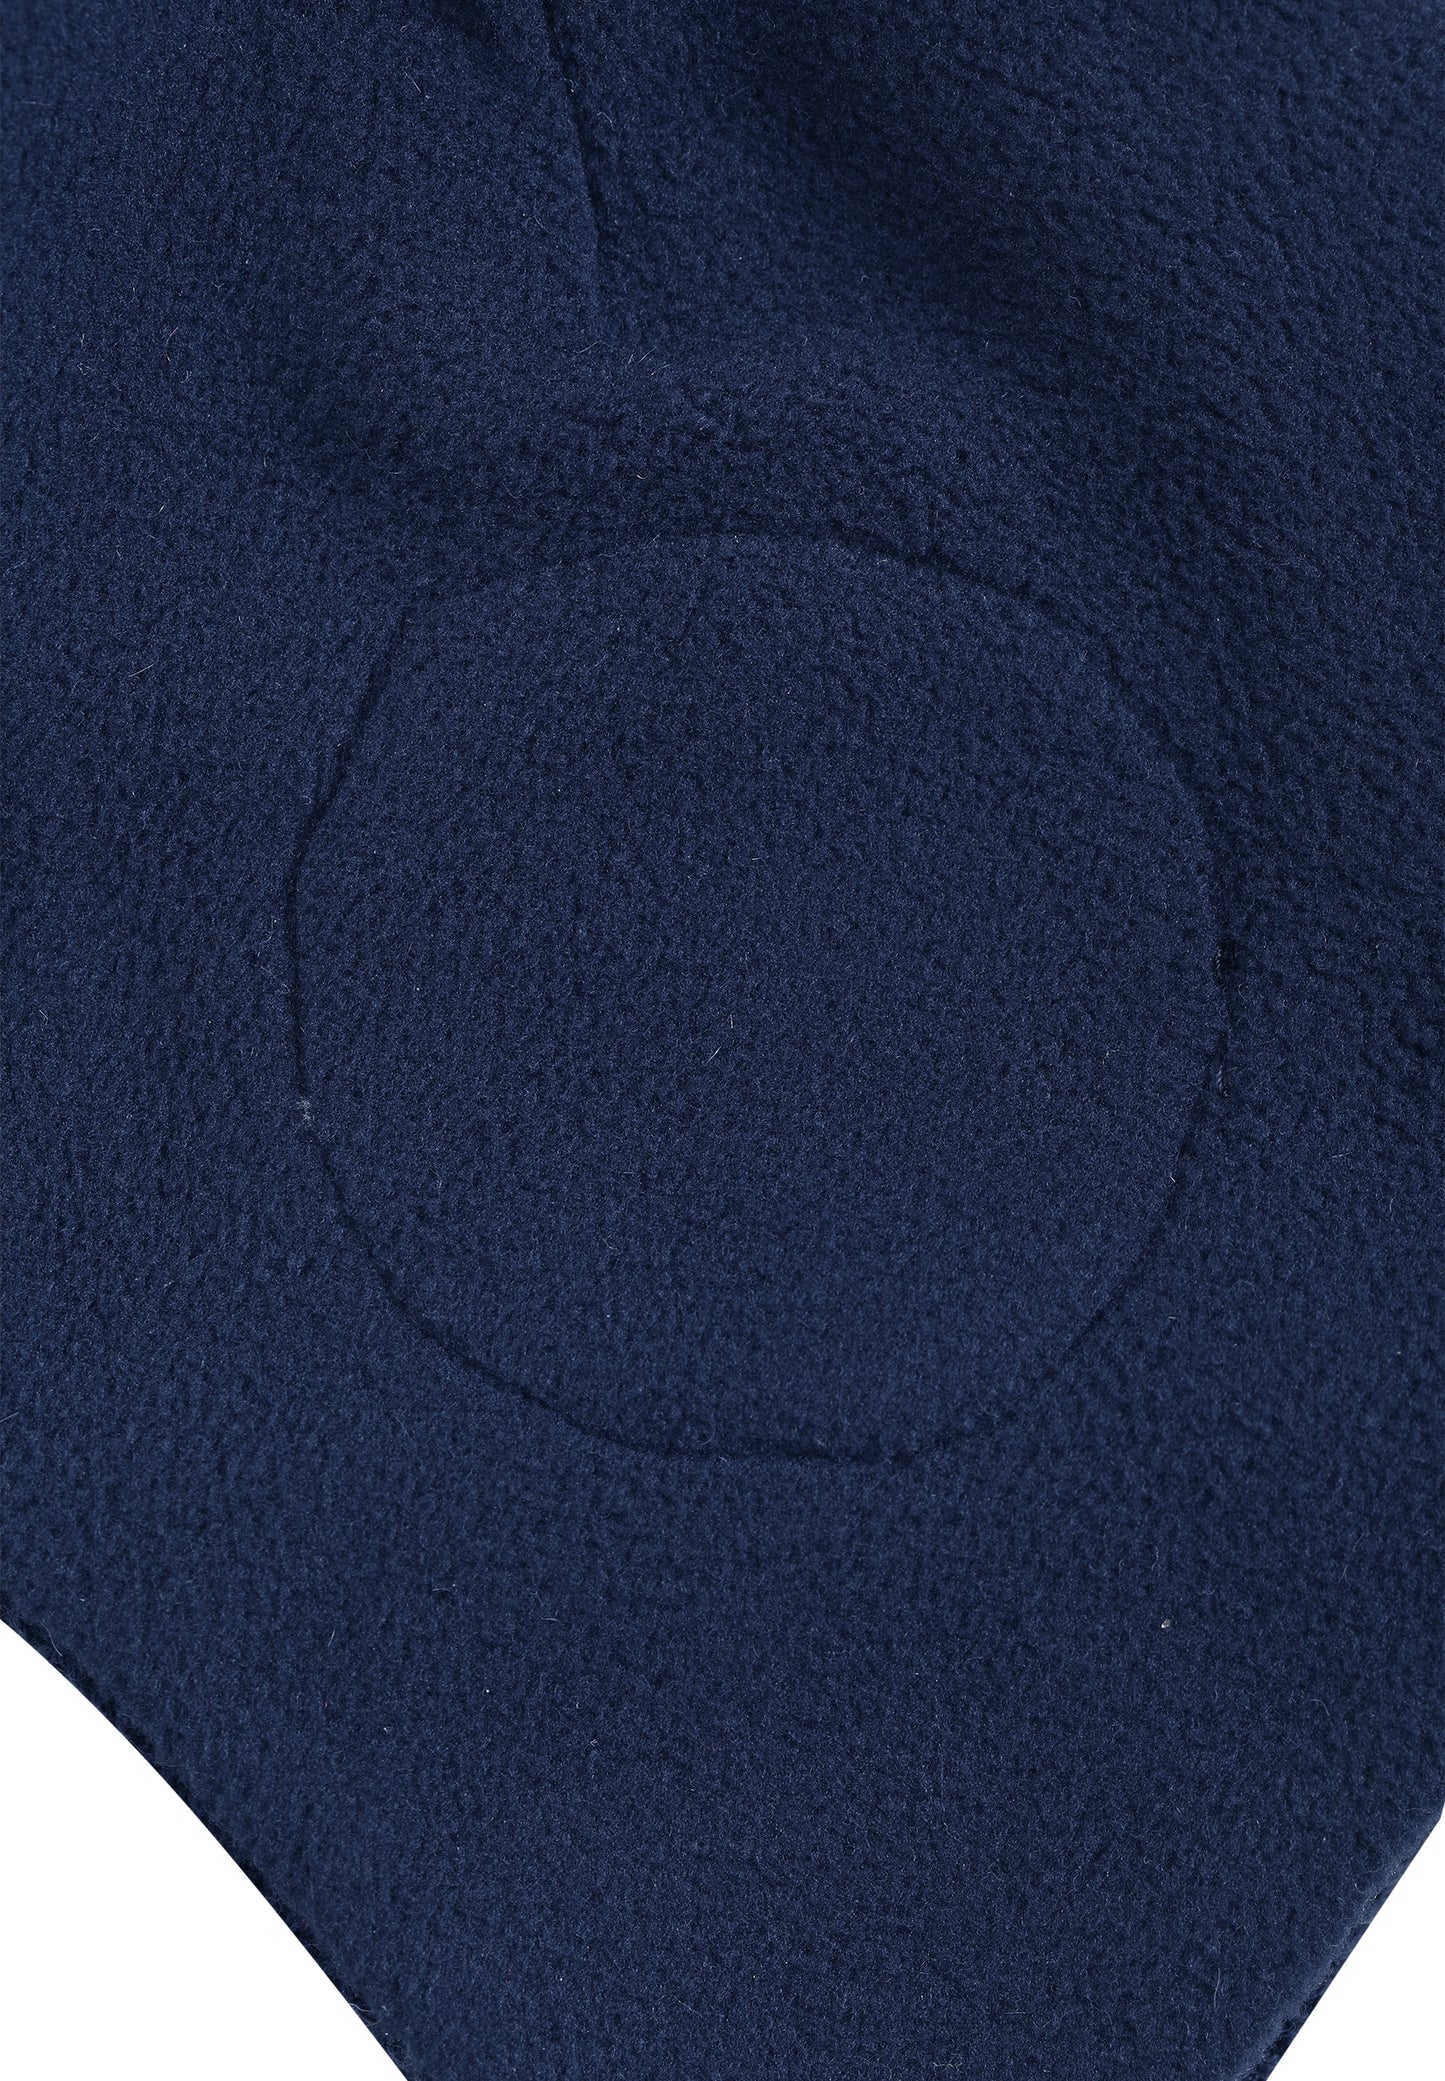 Reima Mütze mit Bändel <br>Auva/Hopea <br>Gr. 46, 48<br>innen hautfreundliches Fleece<br> aussen warme, wasserabweisende Merino-Wolle<br>Windstopper-Membrane im Ohrbereich<br> KEIN UMTAUSCH ⬛️